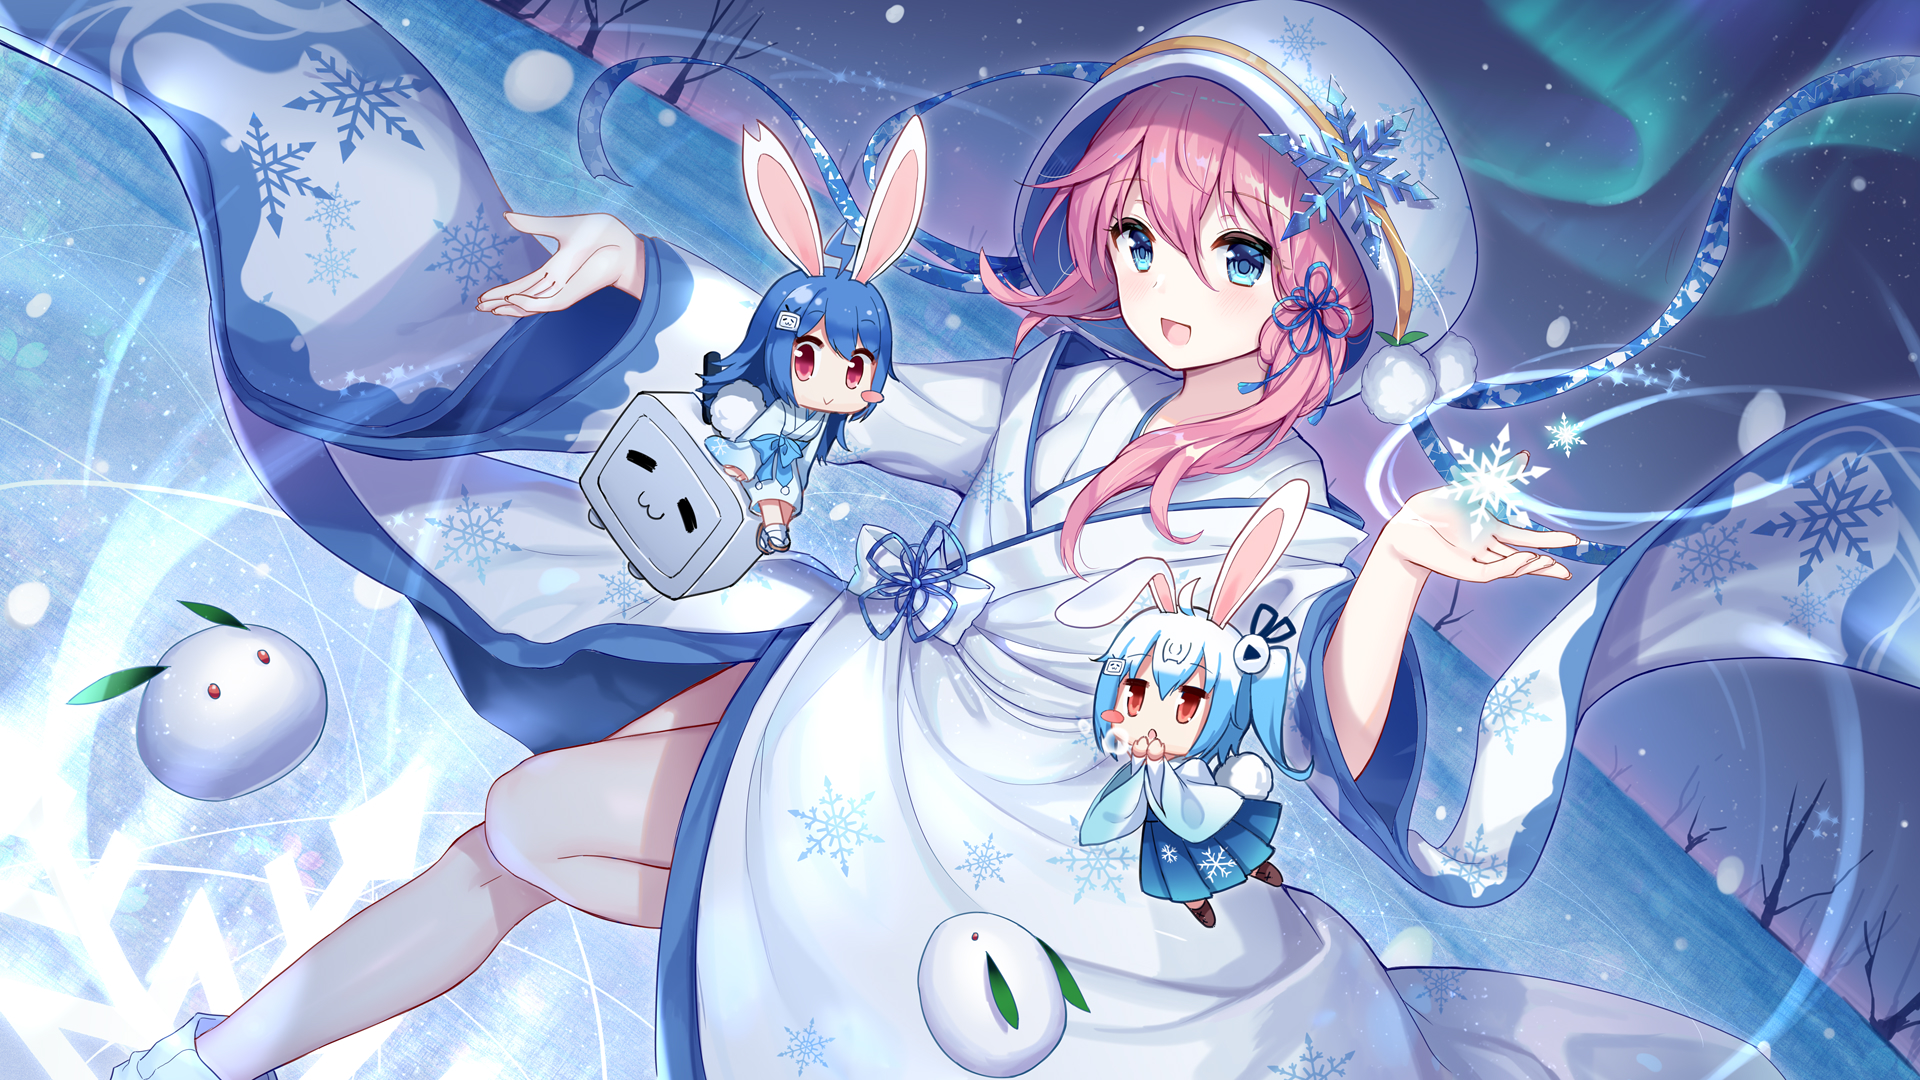 Anime Anime Girls Kimono Snowflakes 22 Bilibili 33 Bilibili Bilibili Looking At Viewer Aurorae Bunny 1920x1080